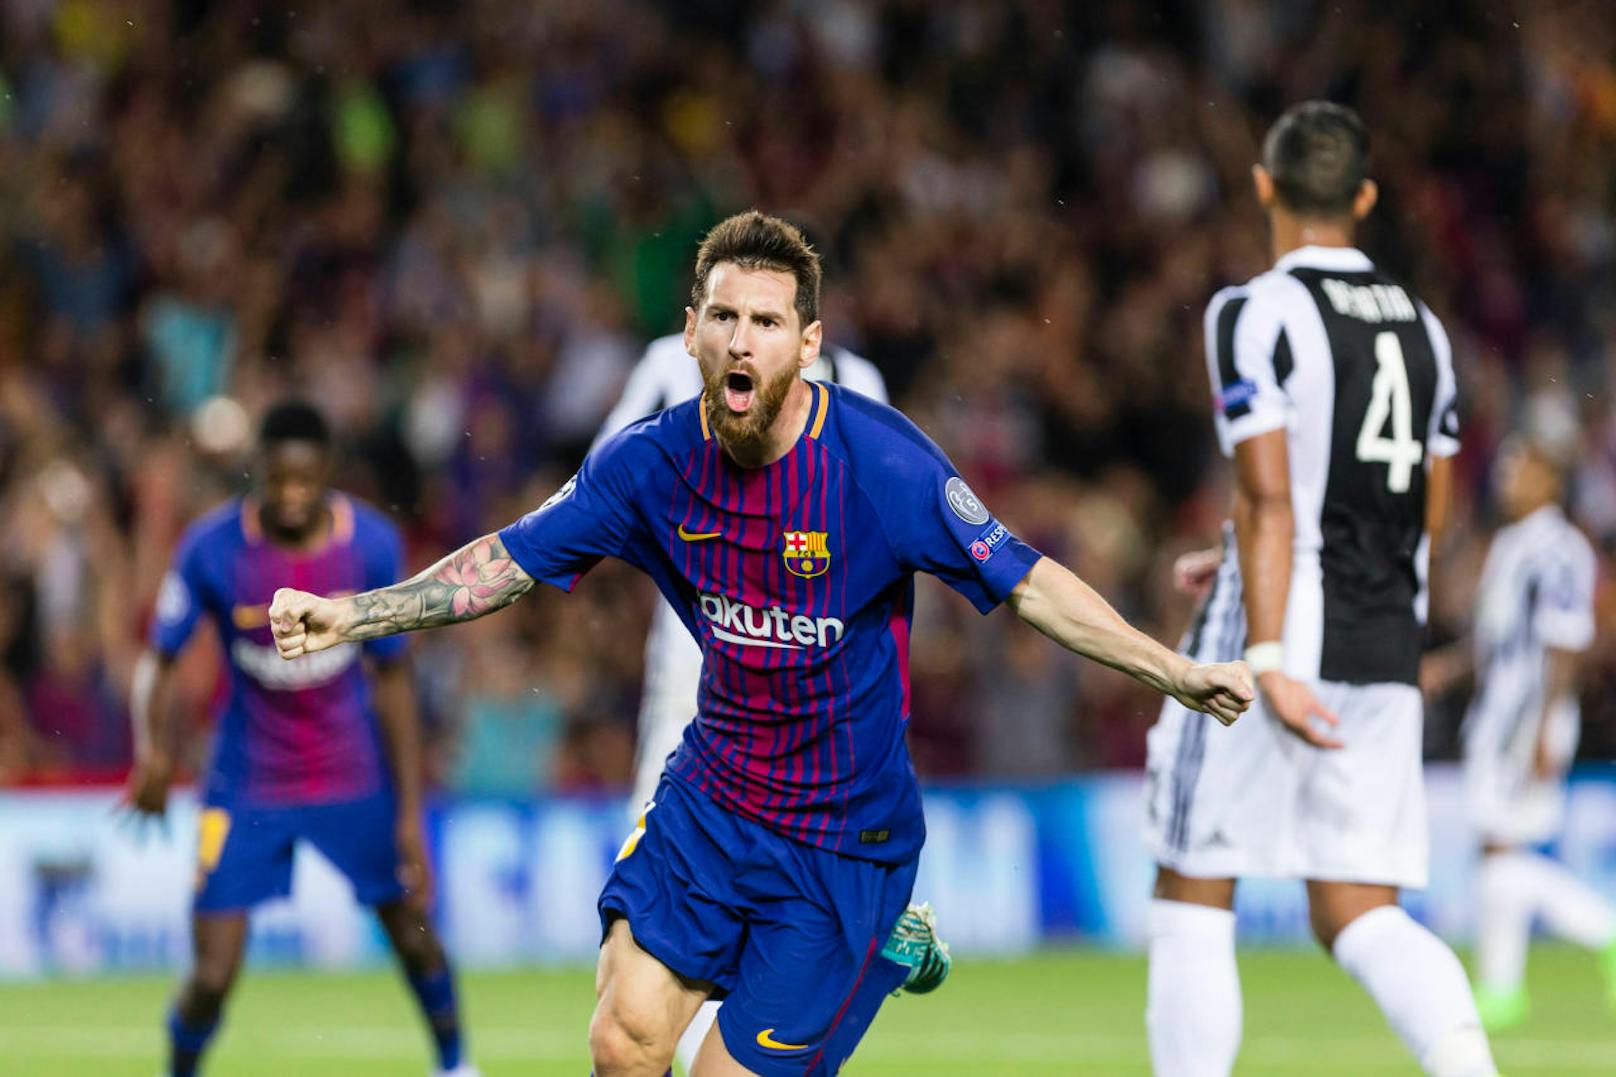 Platz 1: Lionel Messi. Der Supertechniker vom FC Barcelona wurde sieben Mal zum Weltfußballer gewählt - Rekord! Messi hält viele Bestmarken: 2011/2012 schoss er 50 Liga-Tore für Barcelona in einer Saison. Er ist auch der einzige Spieler, der gegen alle 19 Liga-Gegner in Folge traf. 2012 schoss er gegen Leverkusen in der Champions League beim 7:1 gleich fünf Tore.